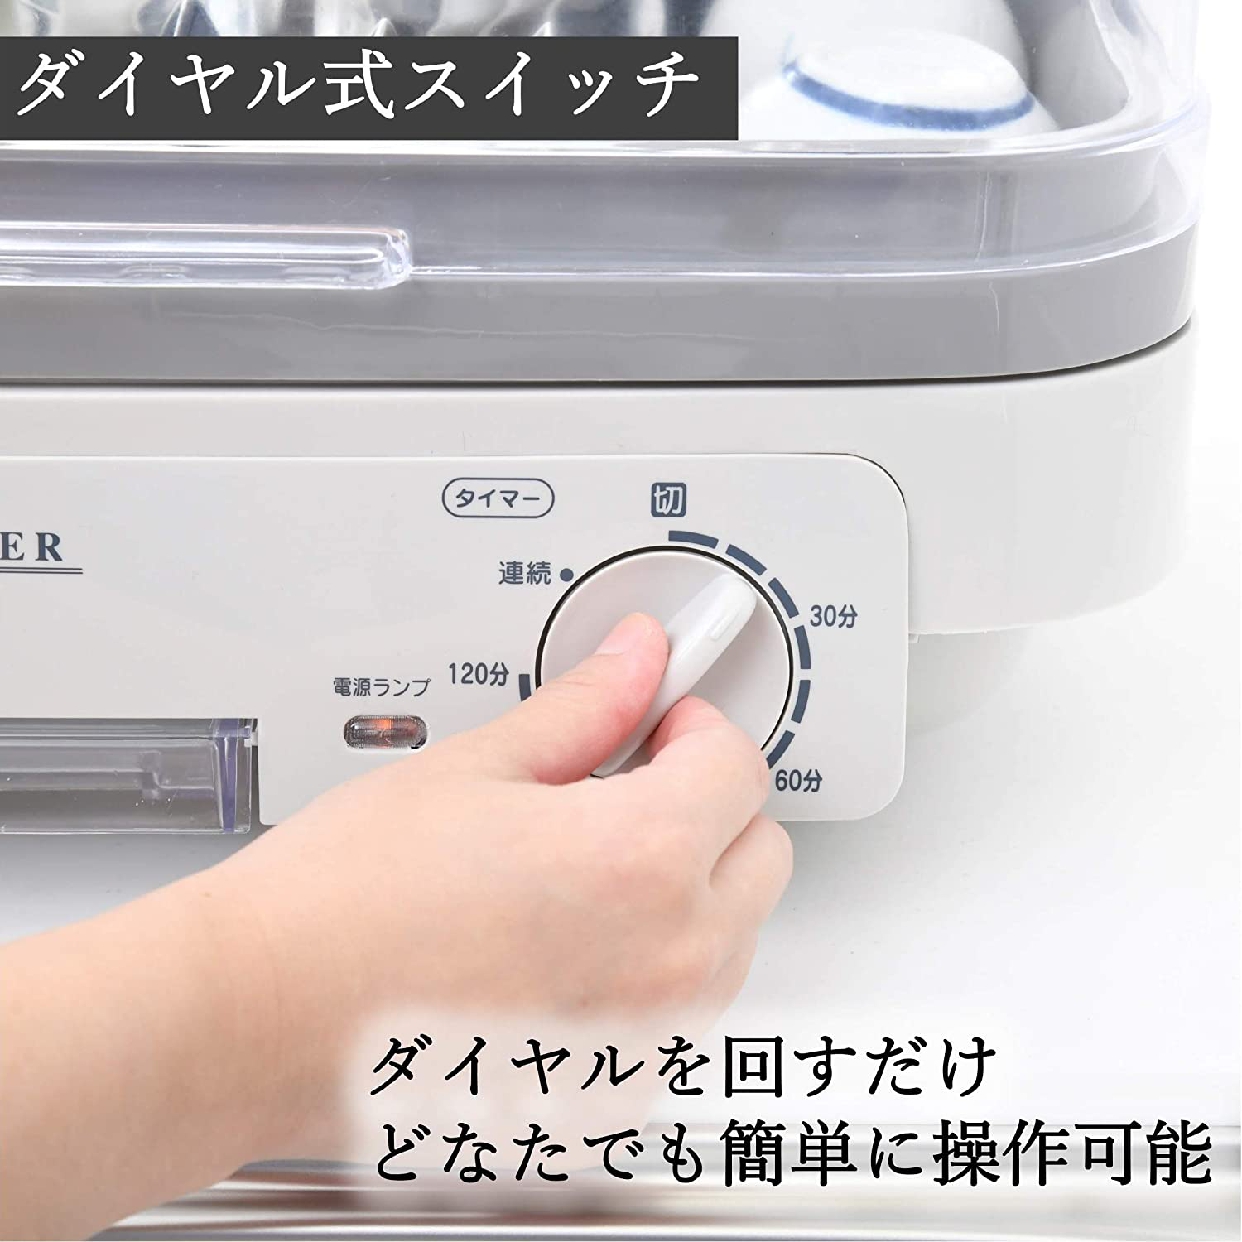 山善(YAMAZEN) 食器乾燥機 YD-180の商品画像3 